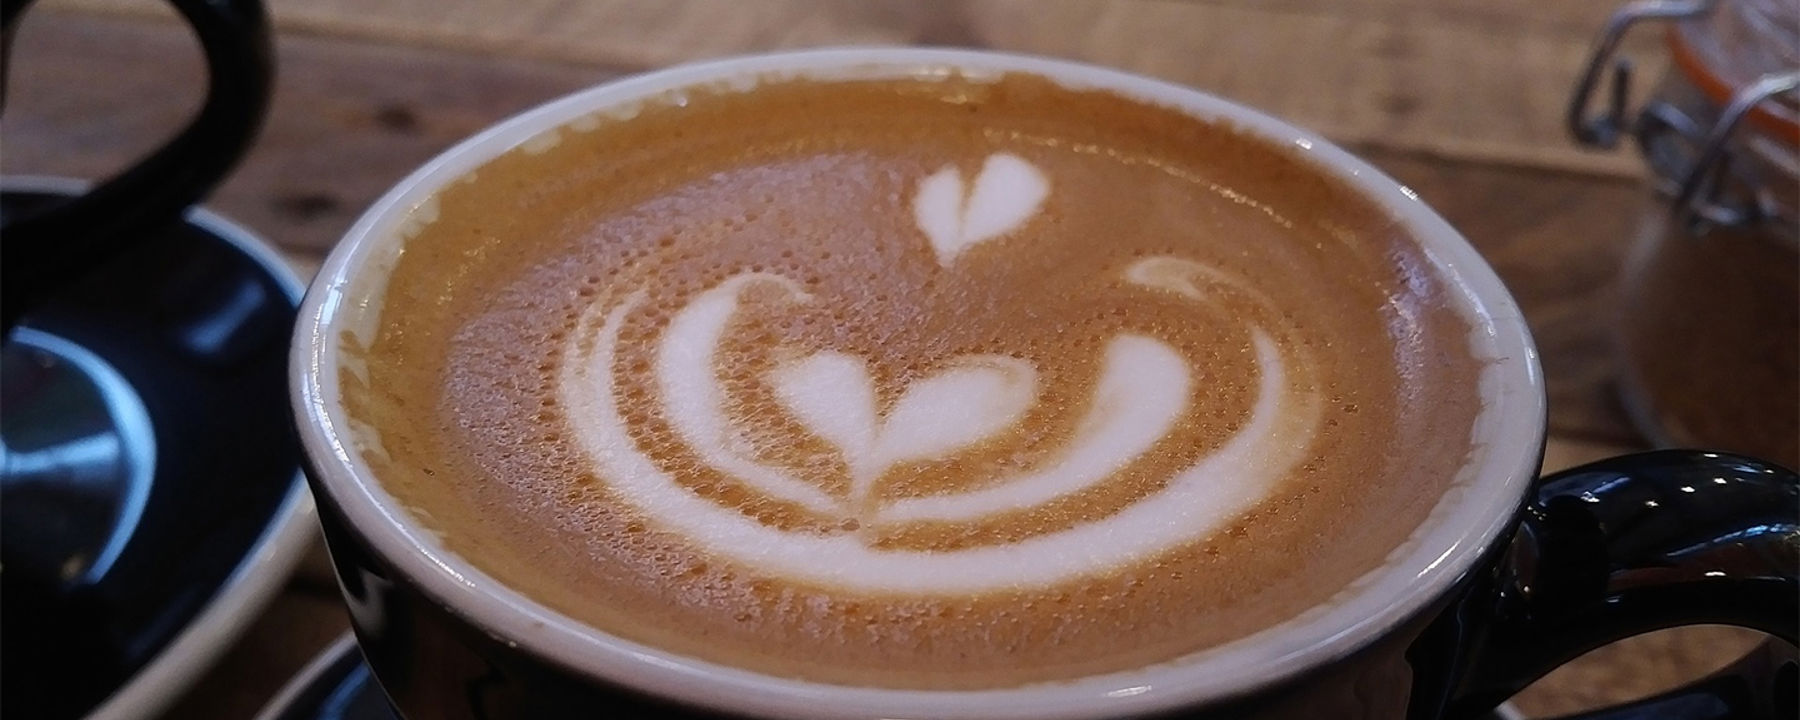 Kopp kaffe med fint mönster